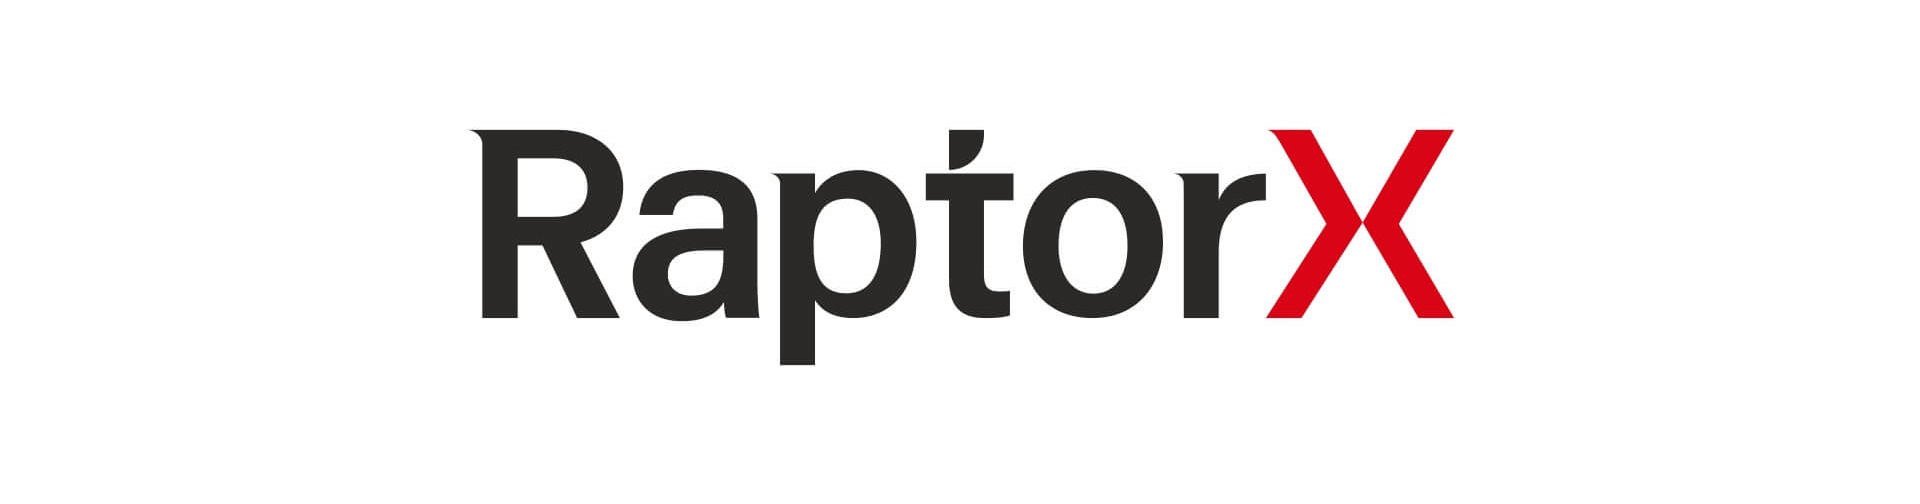 RAPTORX-logo